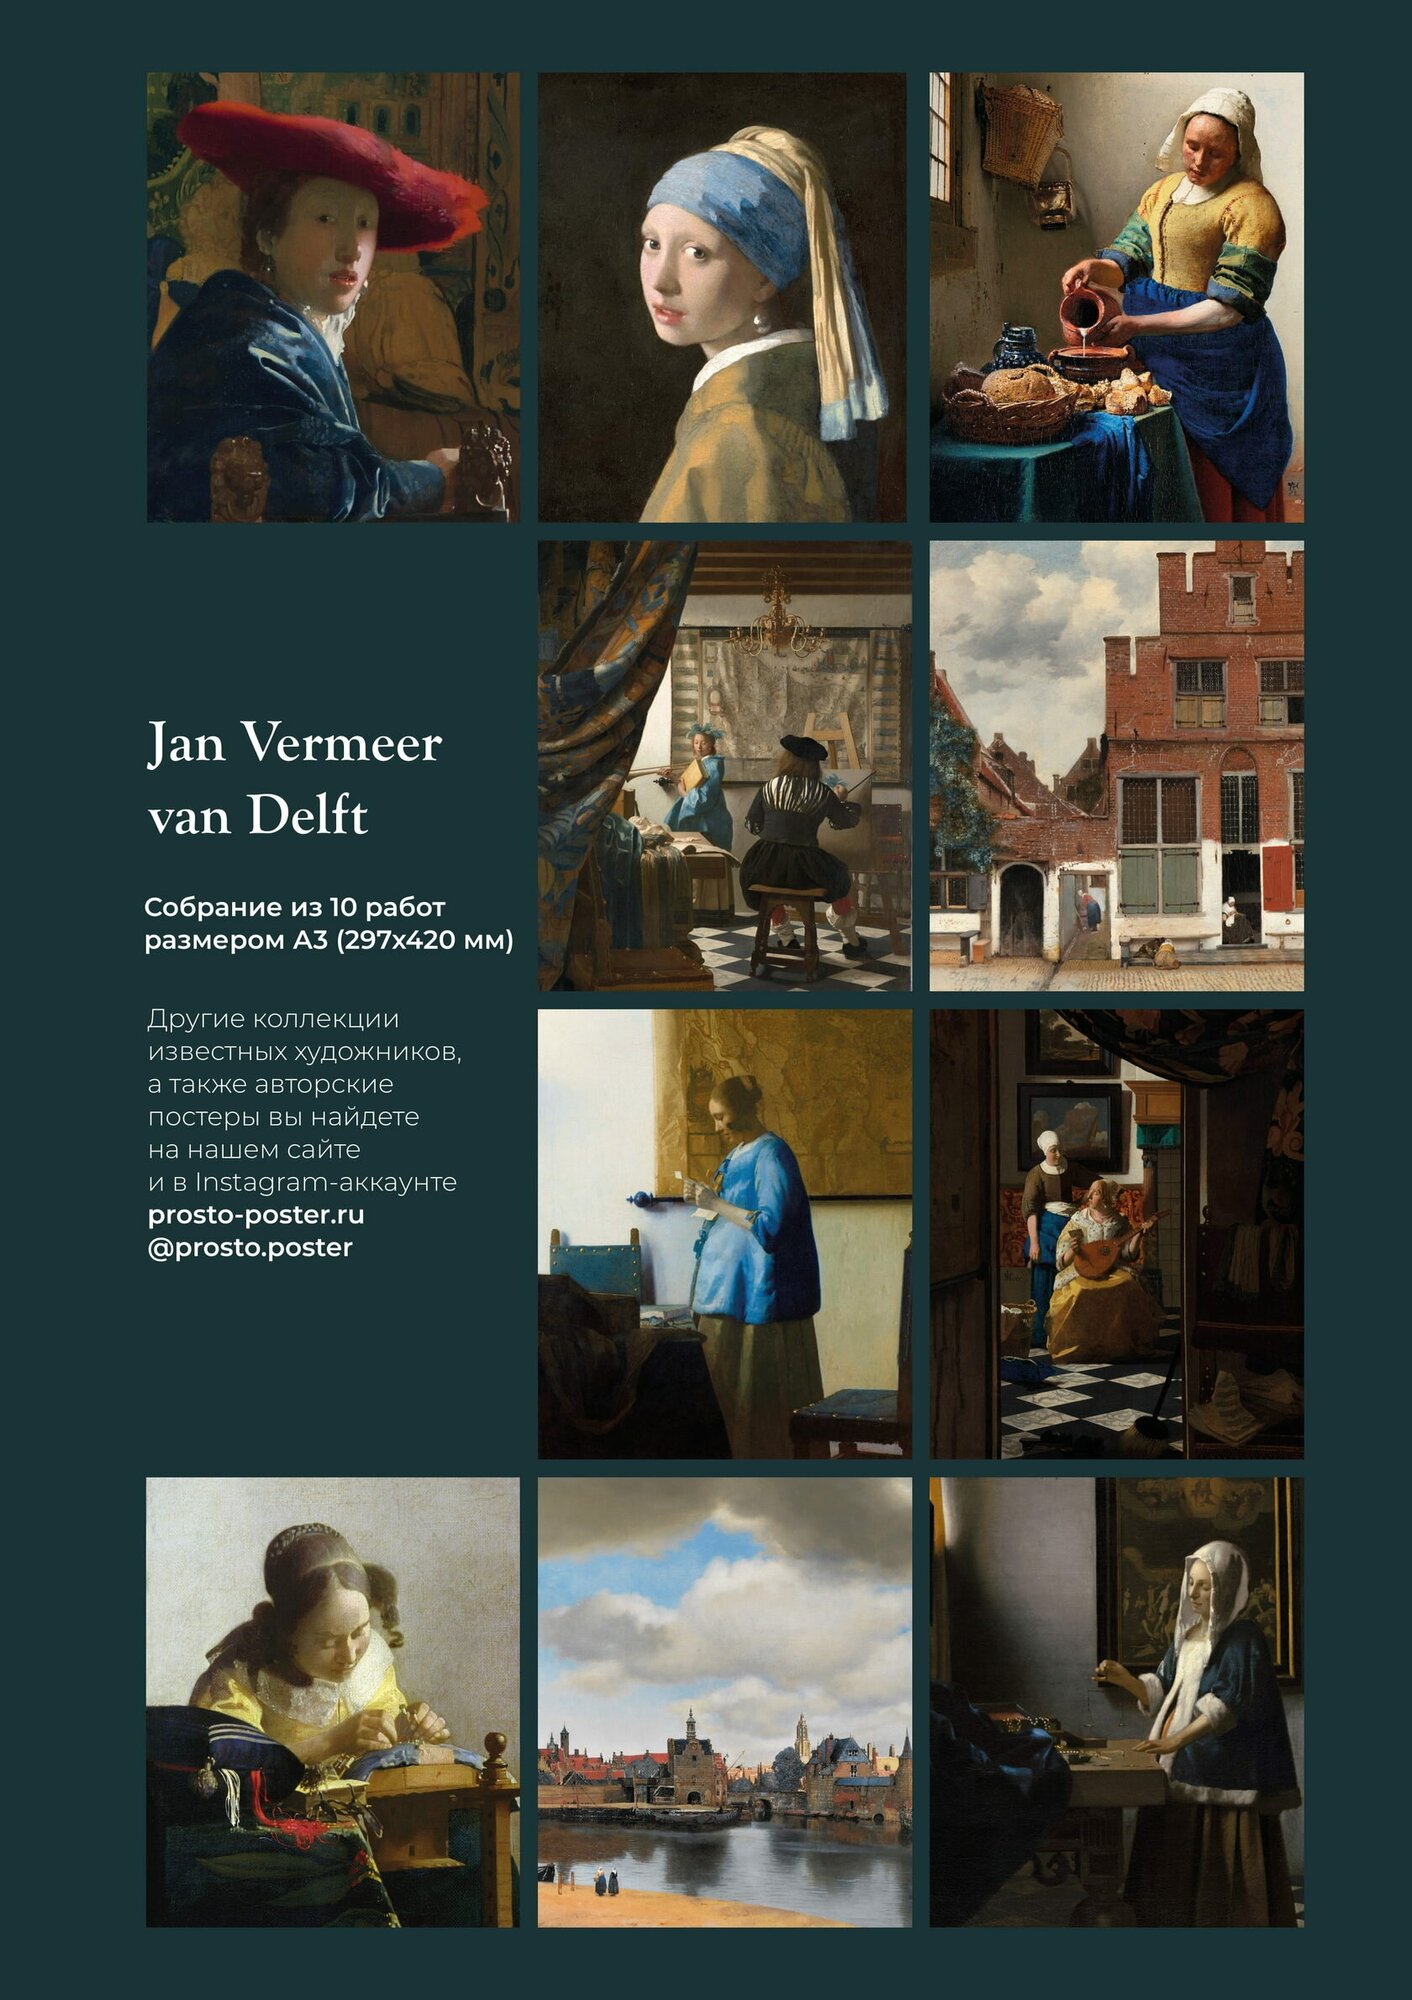 Ян Вермеер: набор из 10 постеров с лучшими картинами